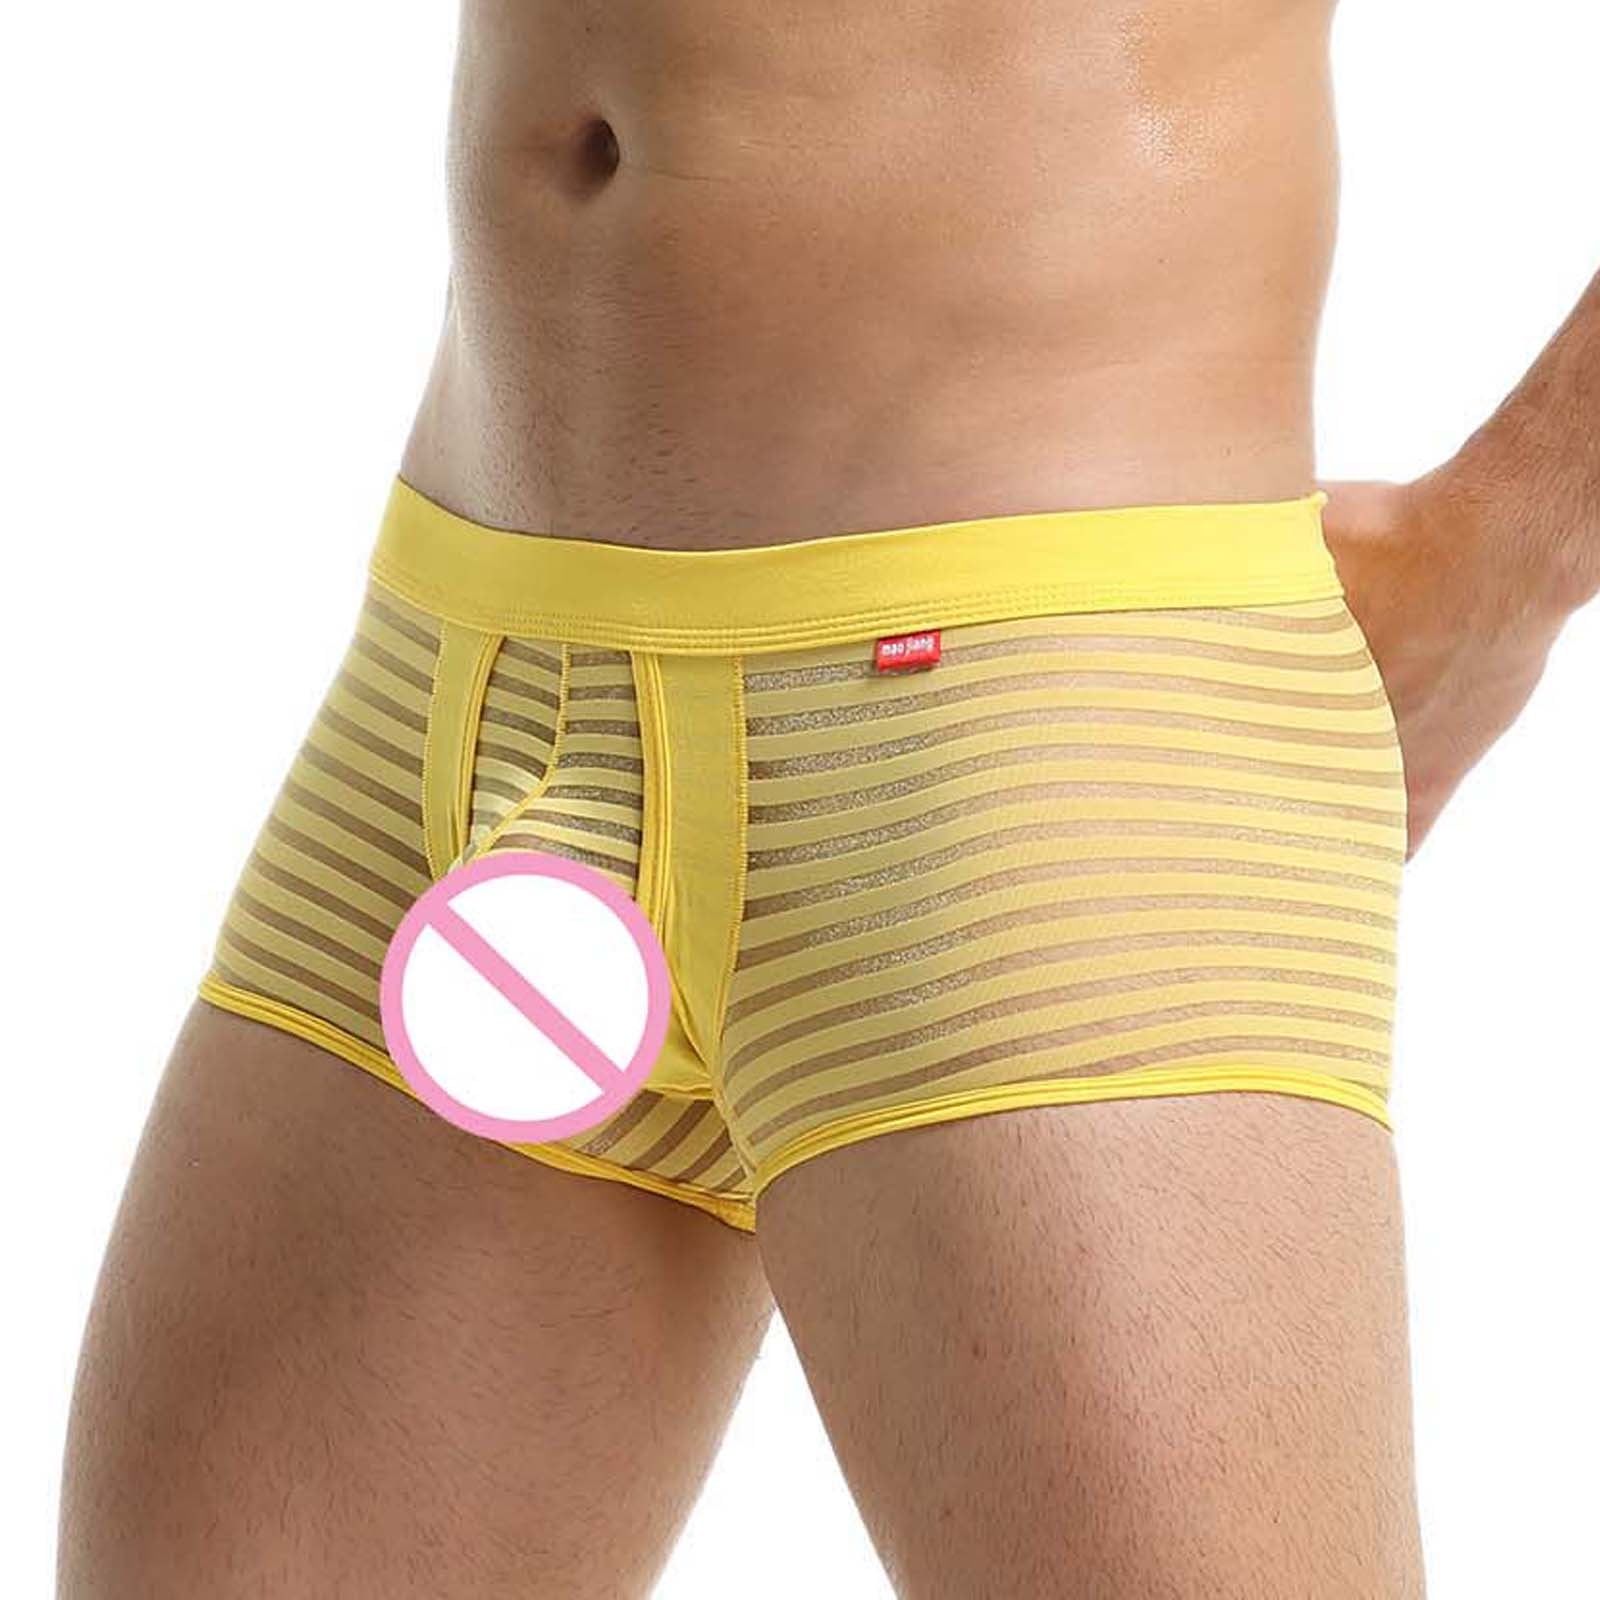 Akiihool Underpants Men's Dual Pouch Underwear Micro Modal Trunks